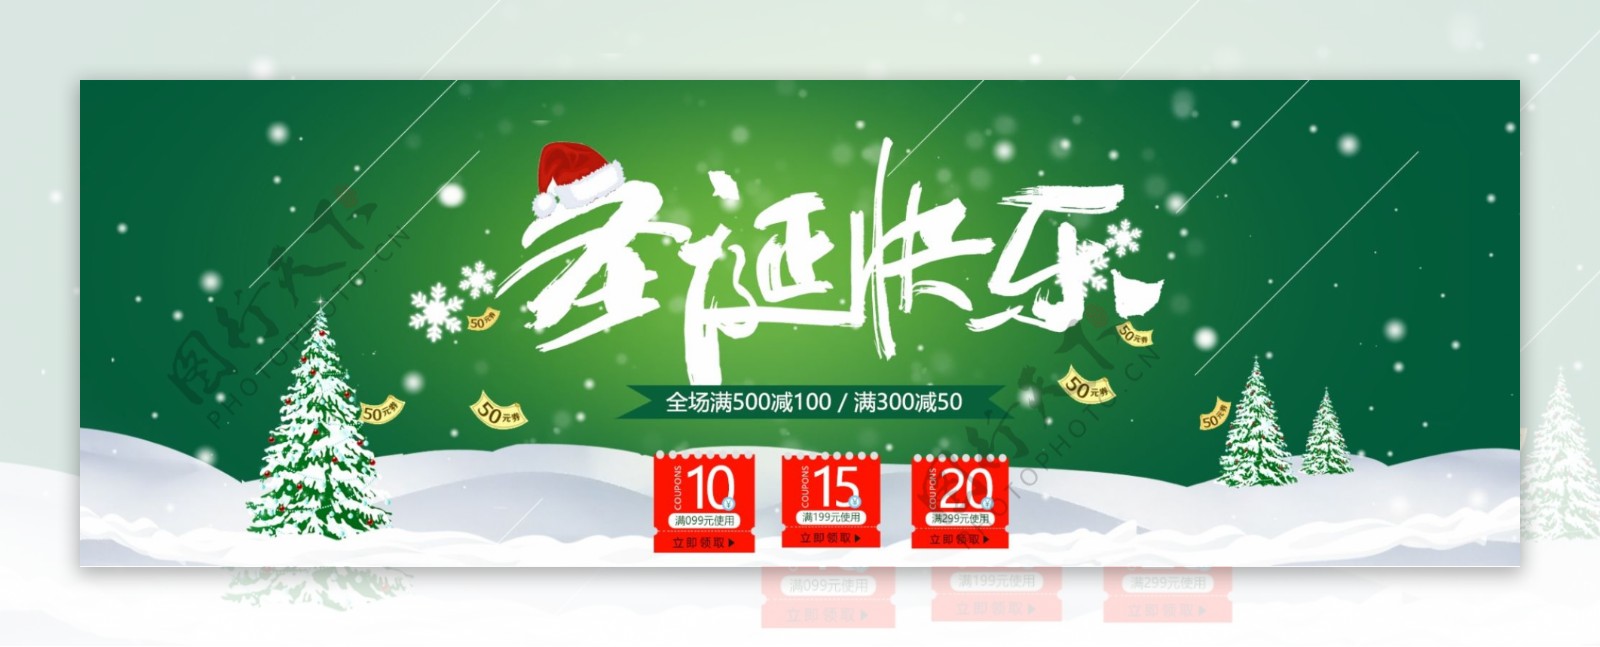 淘宝绿色圣诞节活动促销banner模版